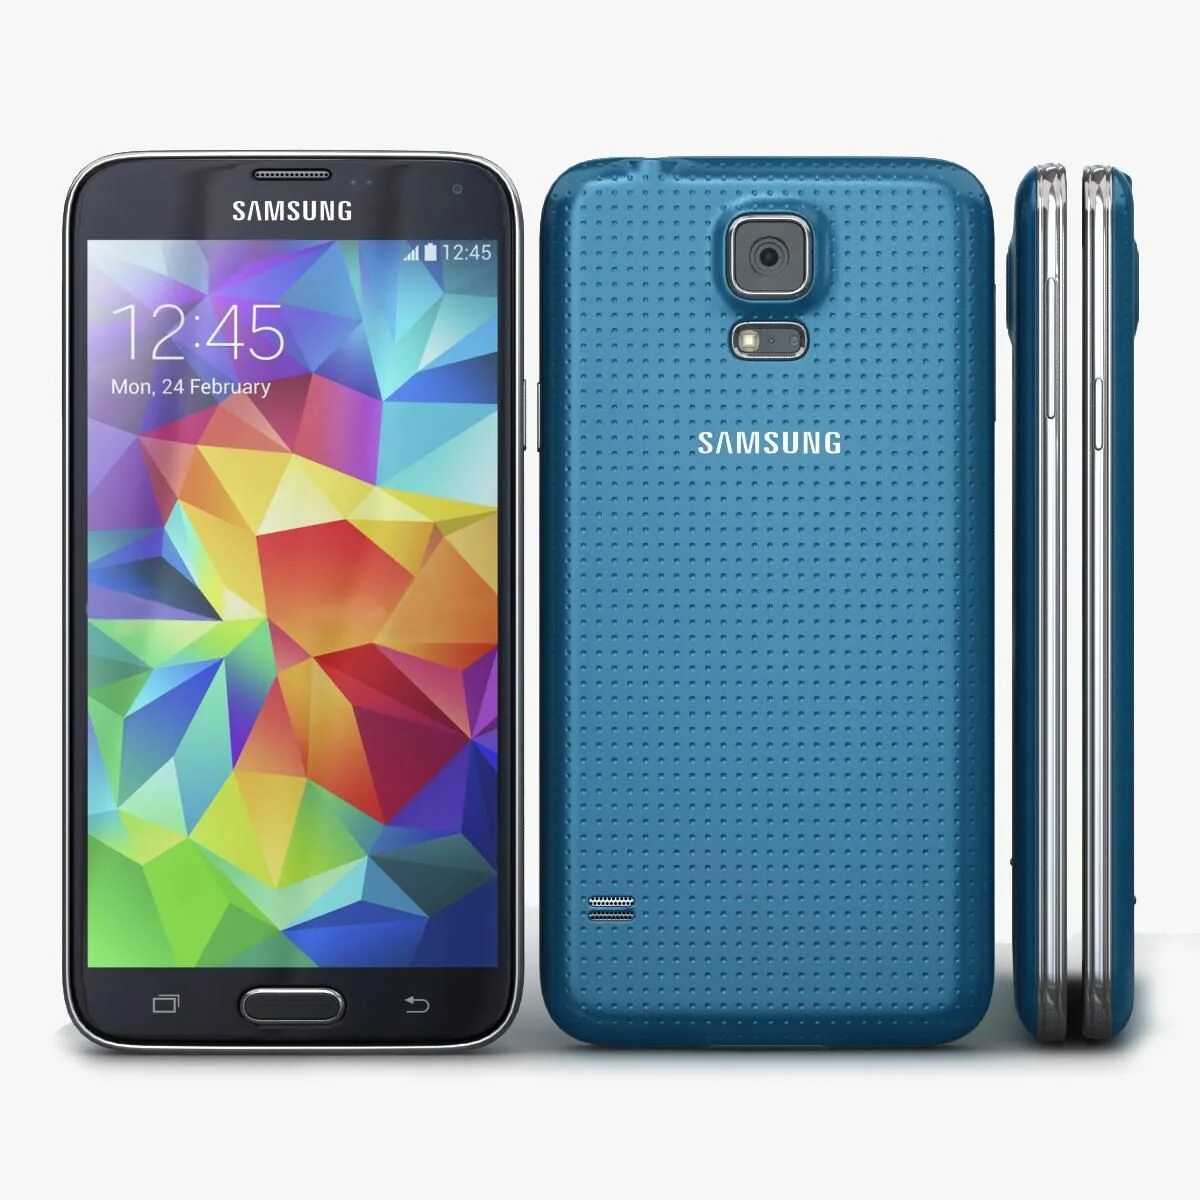 Samsung Galaxy s5 Mini. Samsung Galaxy SM g800f. Самсунг s5 мини. Samsung Galaxy s5 Mini Gold. S5 mini купить